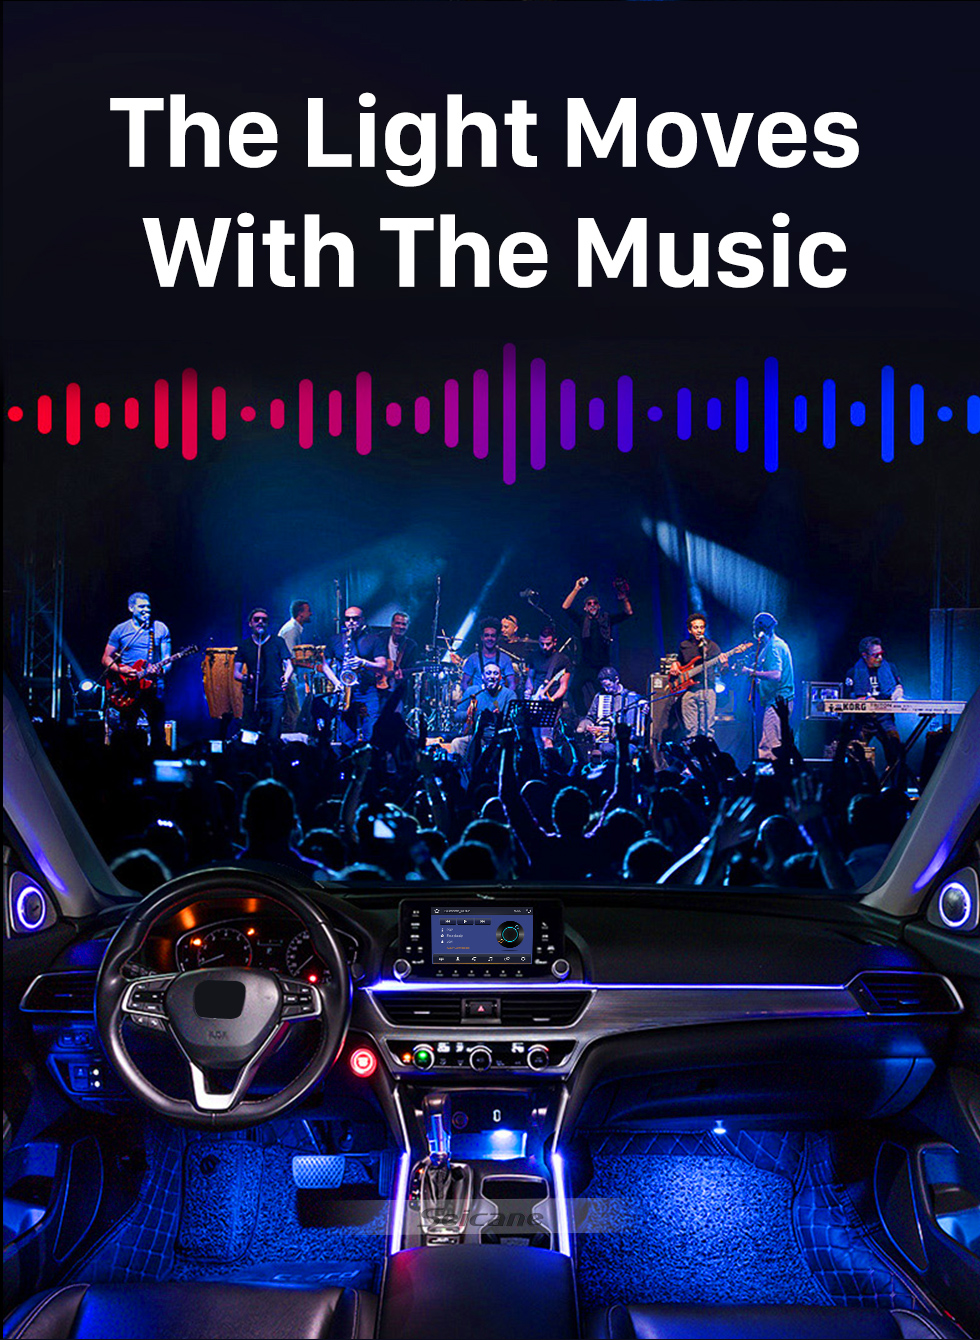 Seicane Автомобильное шасси Bluetooth Control 4 подставки RGB LED Rock Lights для универсального под автомобилем с водонепроницаемым и противокоррозионным покрытием